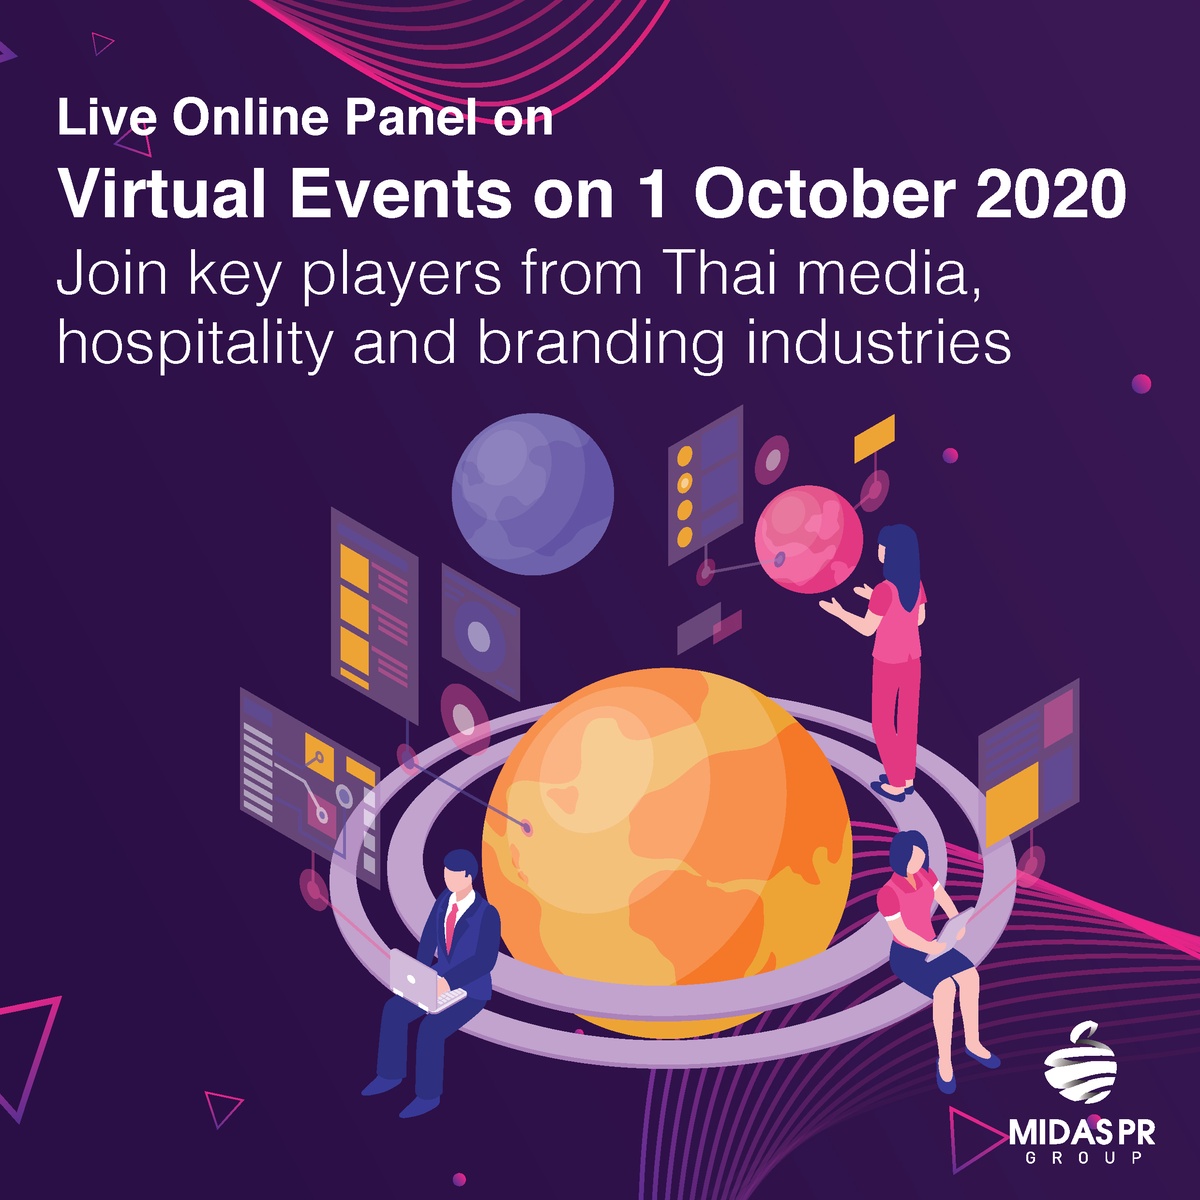 งานสัมมนาออนไลน์ Live ในหัวข้อ การจัดงานแบบ Virtual Events ในวันที่ 1 ตุลาคม 2020 เข้าร่วมกับผู้มีบทบาทสำคัญในอุตสาหกรรมสื่อไทย การบริการ